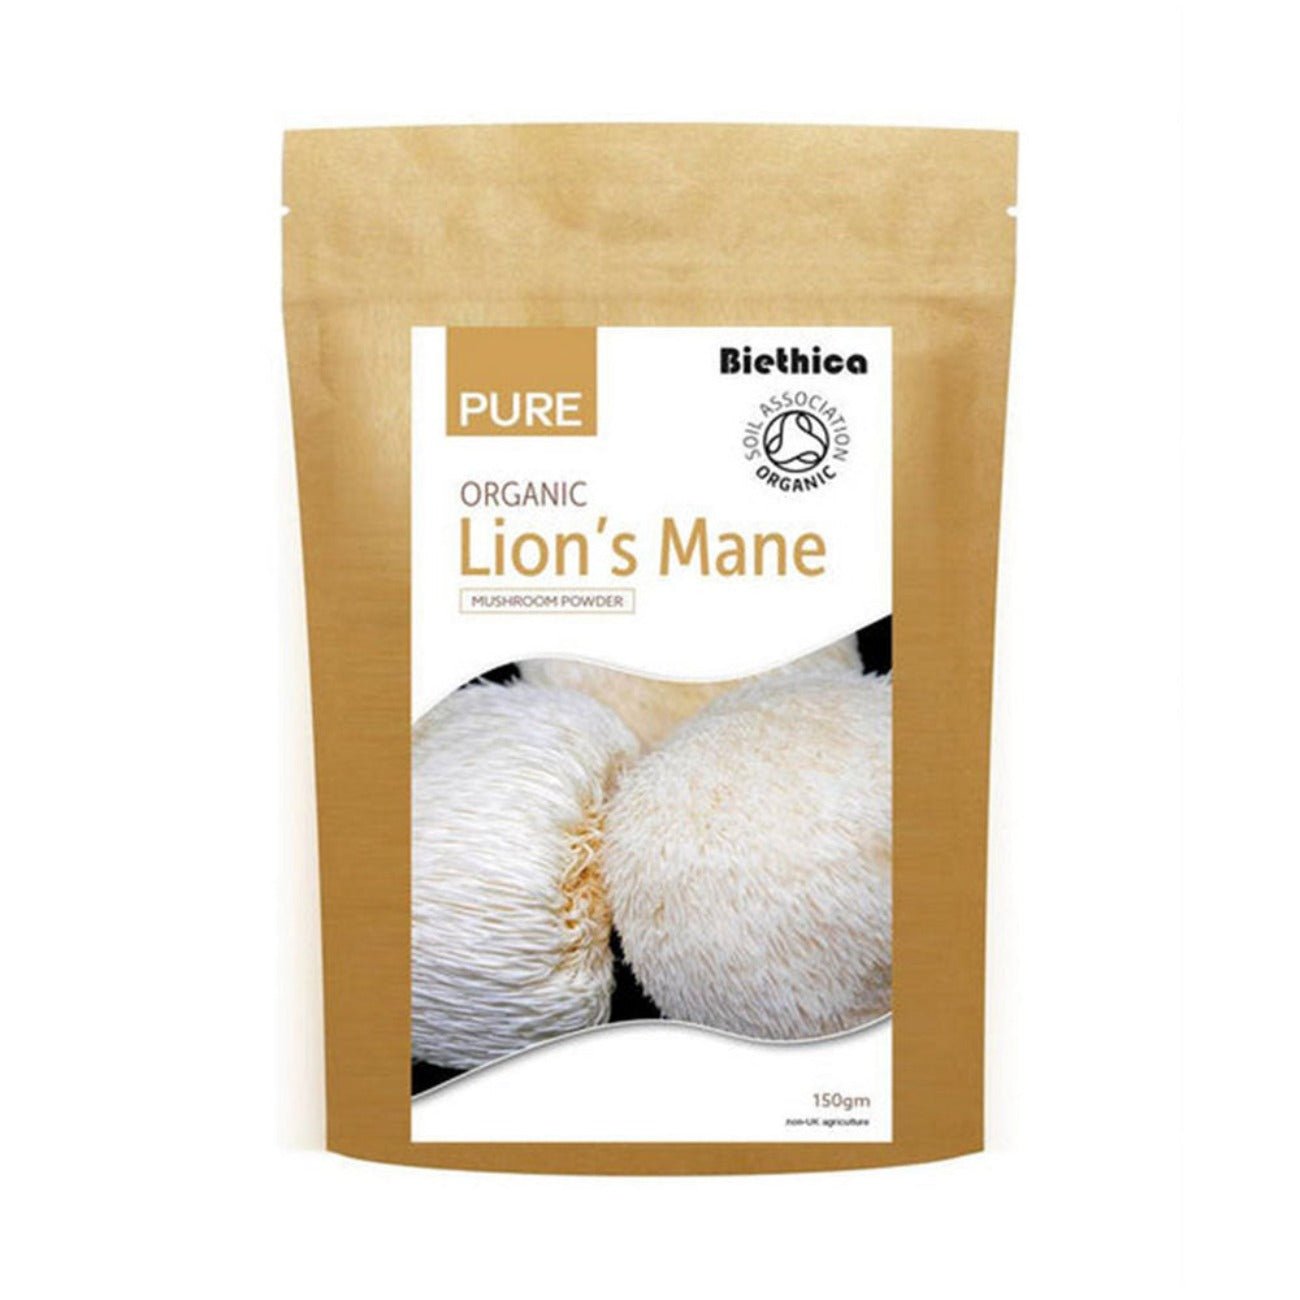 Organic Lions Mane Mushroom Powder 150g